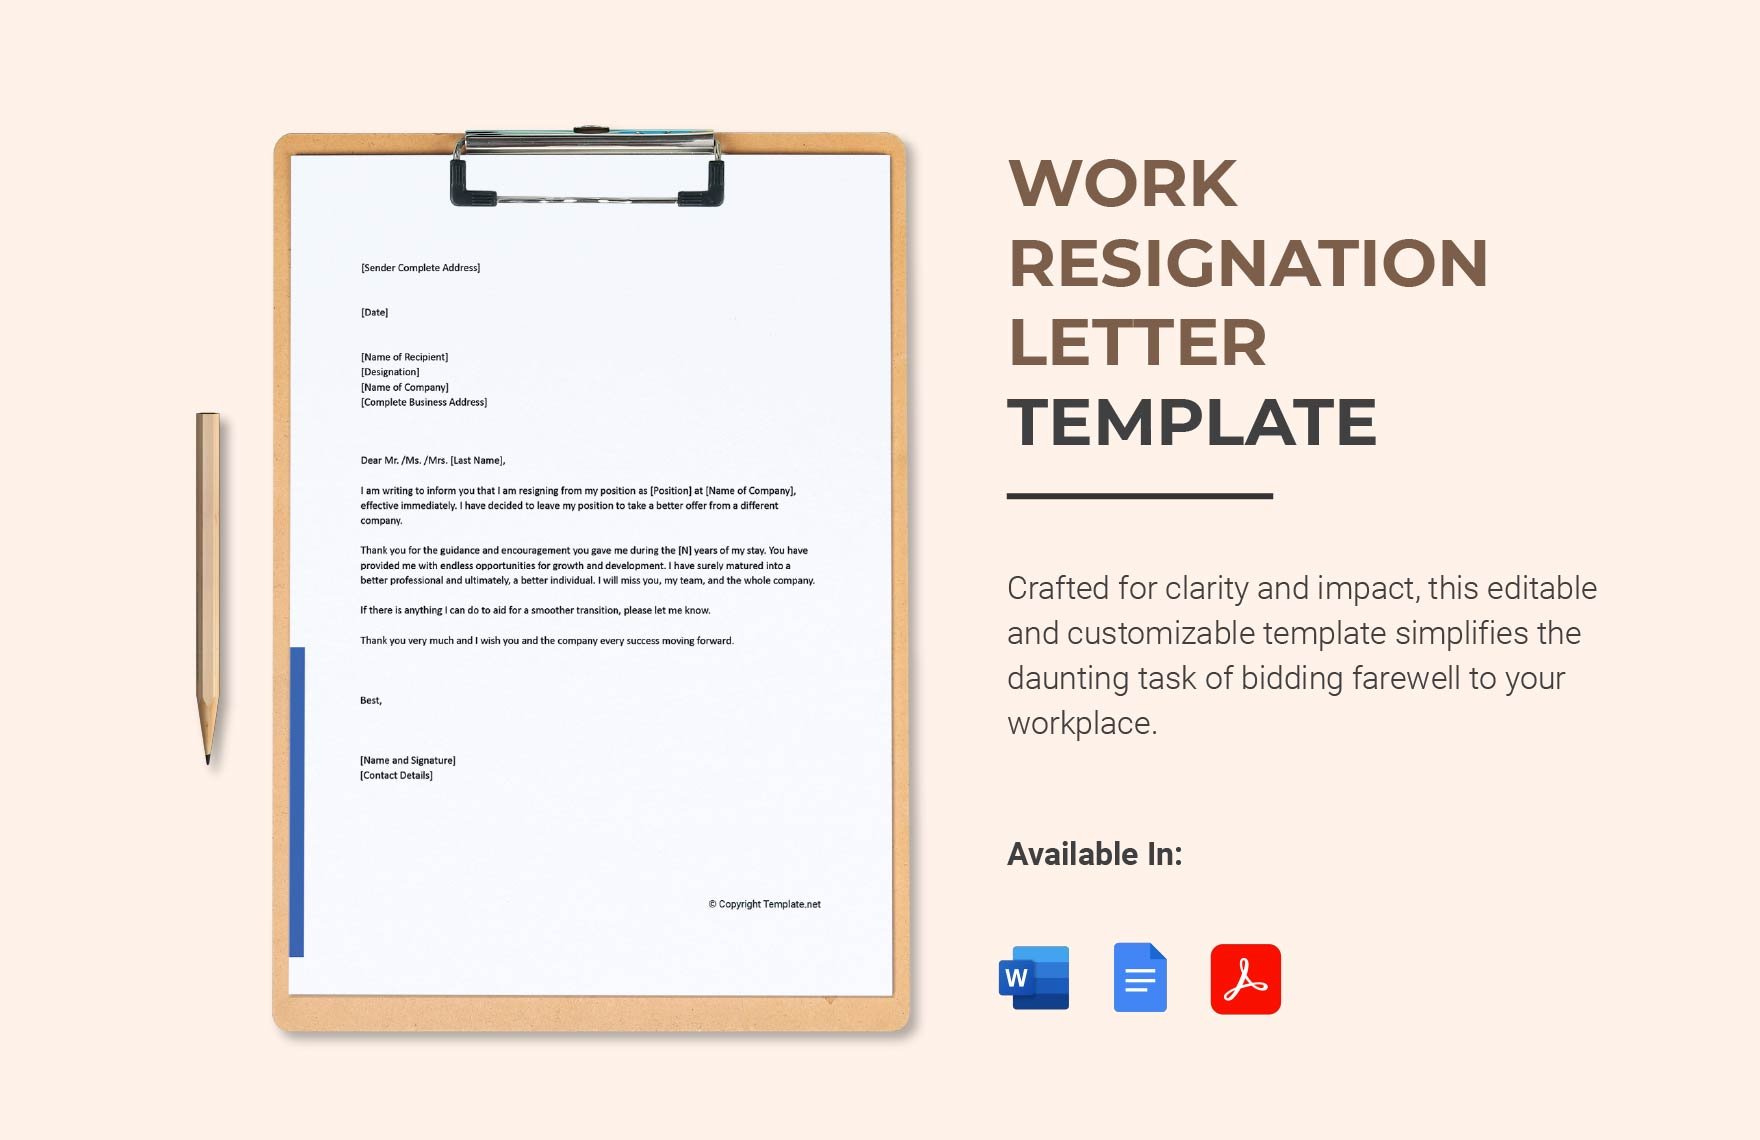 Work Resignation Letter